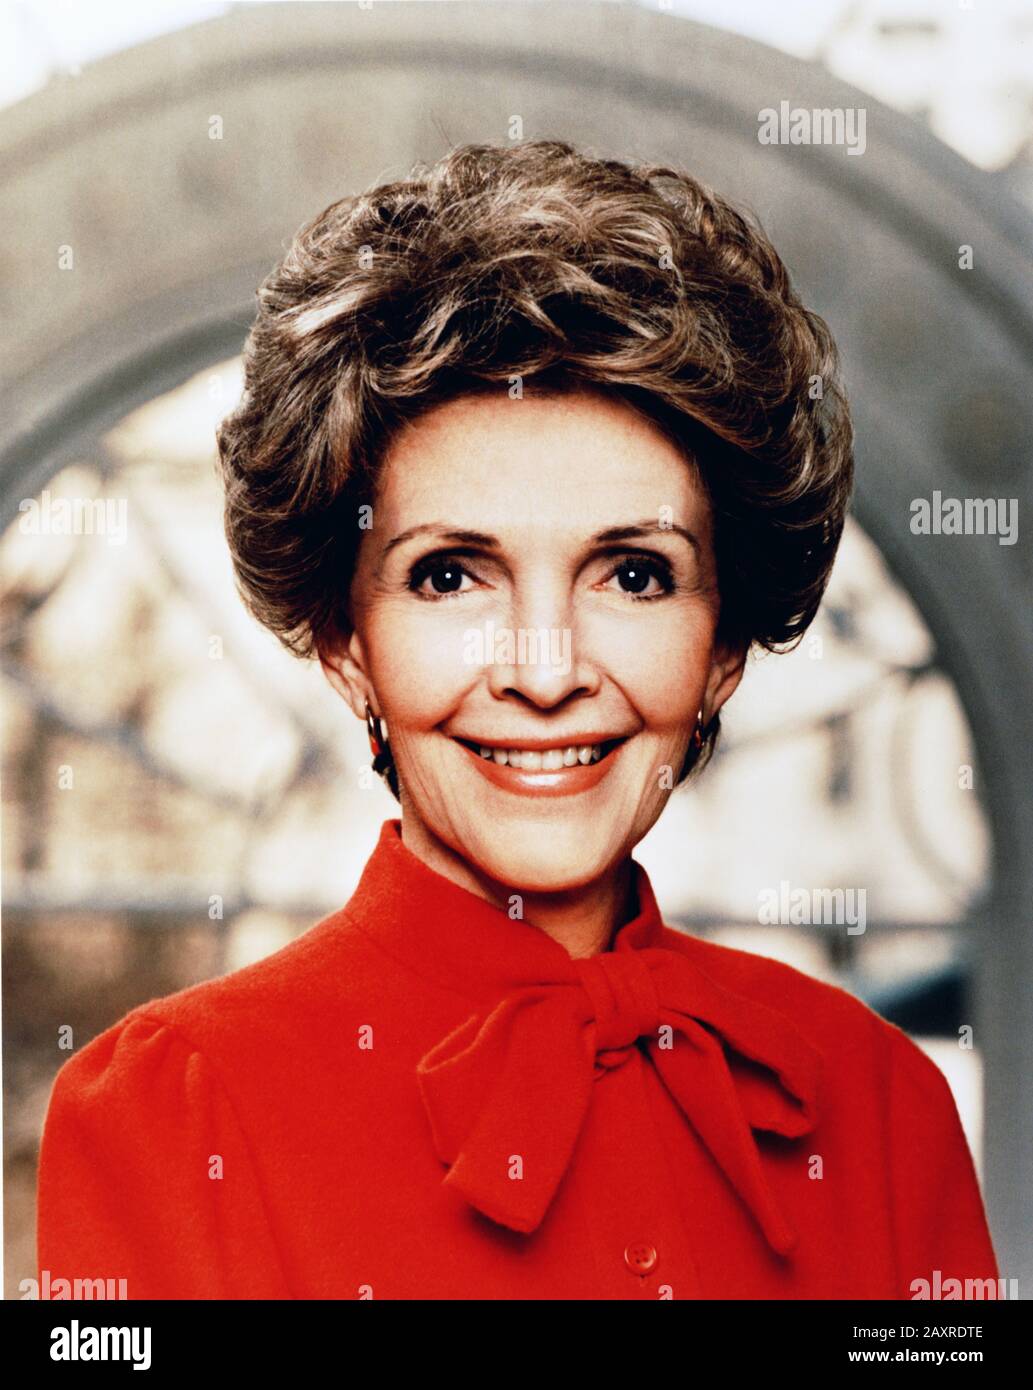 1981 , WASHINGTON D.C. , USA : l'ex attrice e Prima Signora NANCY REAGAN ( Nancy Davis , 1921 - 2016 ). Foto di Official White House fotografo . Sposato con il 40th Presidente degli Stati Uniti D'America RONALD REAGAN ( 1911 - 2004 ) in carica dal 1981 al 1989. In questa foto subito dopo la Parata inaugurale a Washington, D.C. il giorno dell'inaugurazione, 1981. - First Lady of the United States - POLITICO - POLITICO - POLITICO - POLITICO - USA - ritatto - ritratto - abito rosso - PRESIDENTE DELLA REPUBBLICA DEGLI STATI Uniti d'AMERICA ---- Archivio GBB Foto Stock